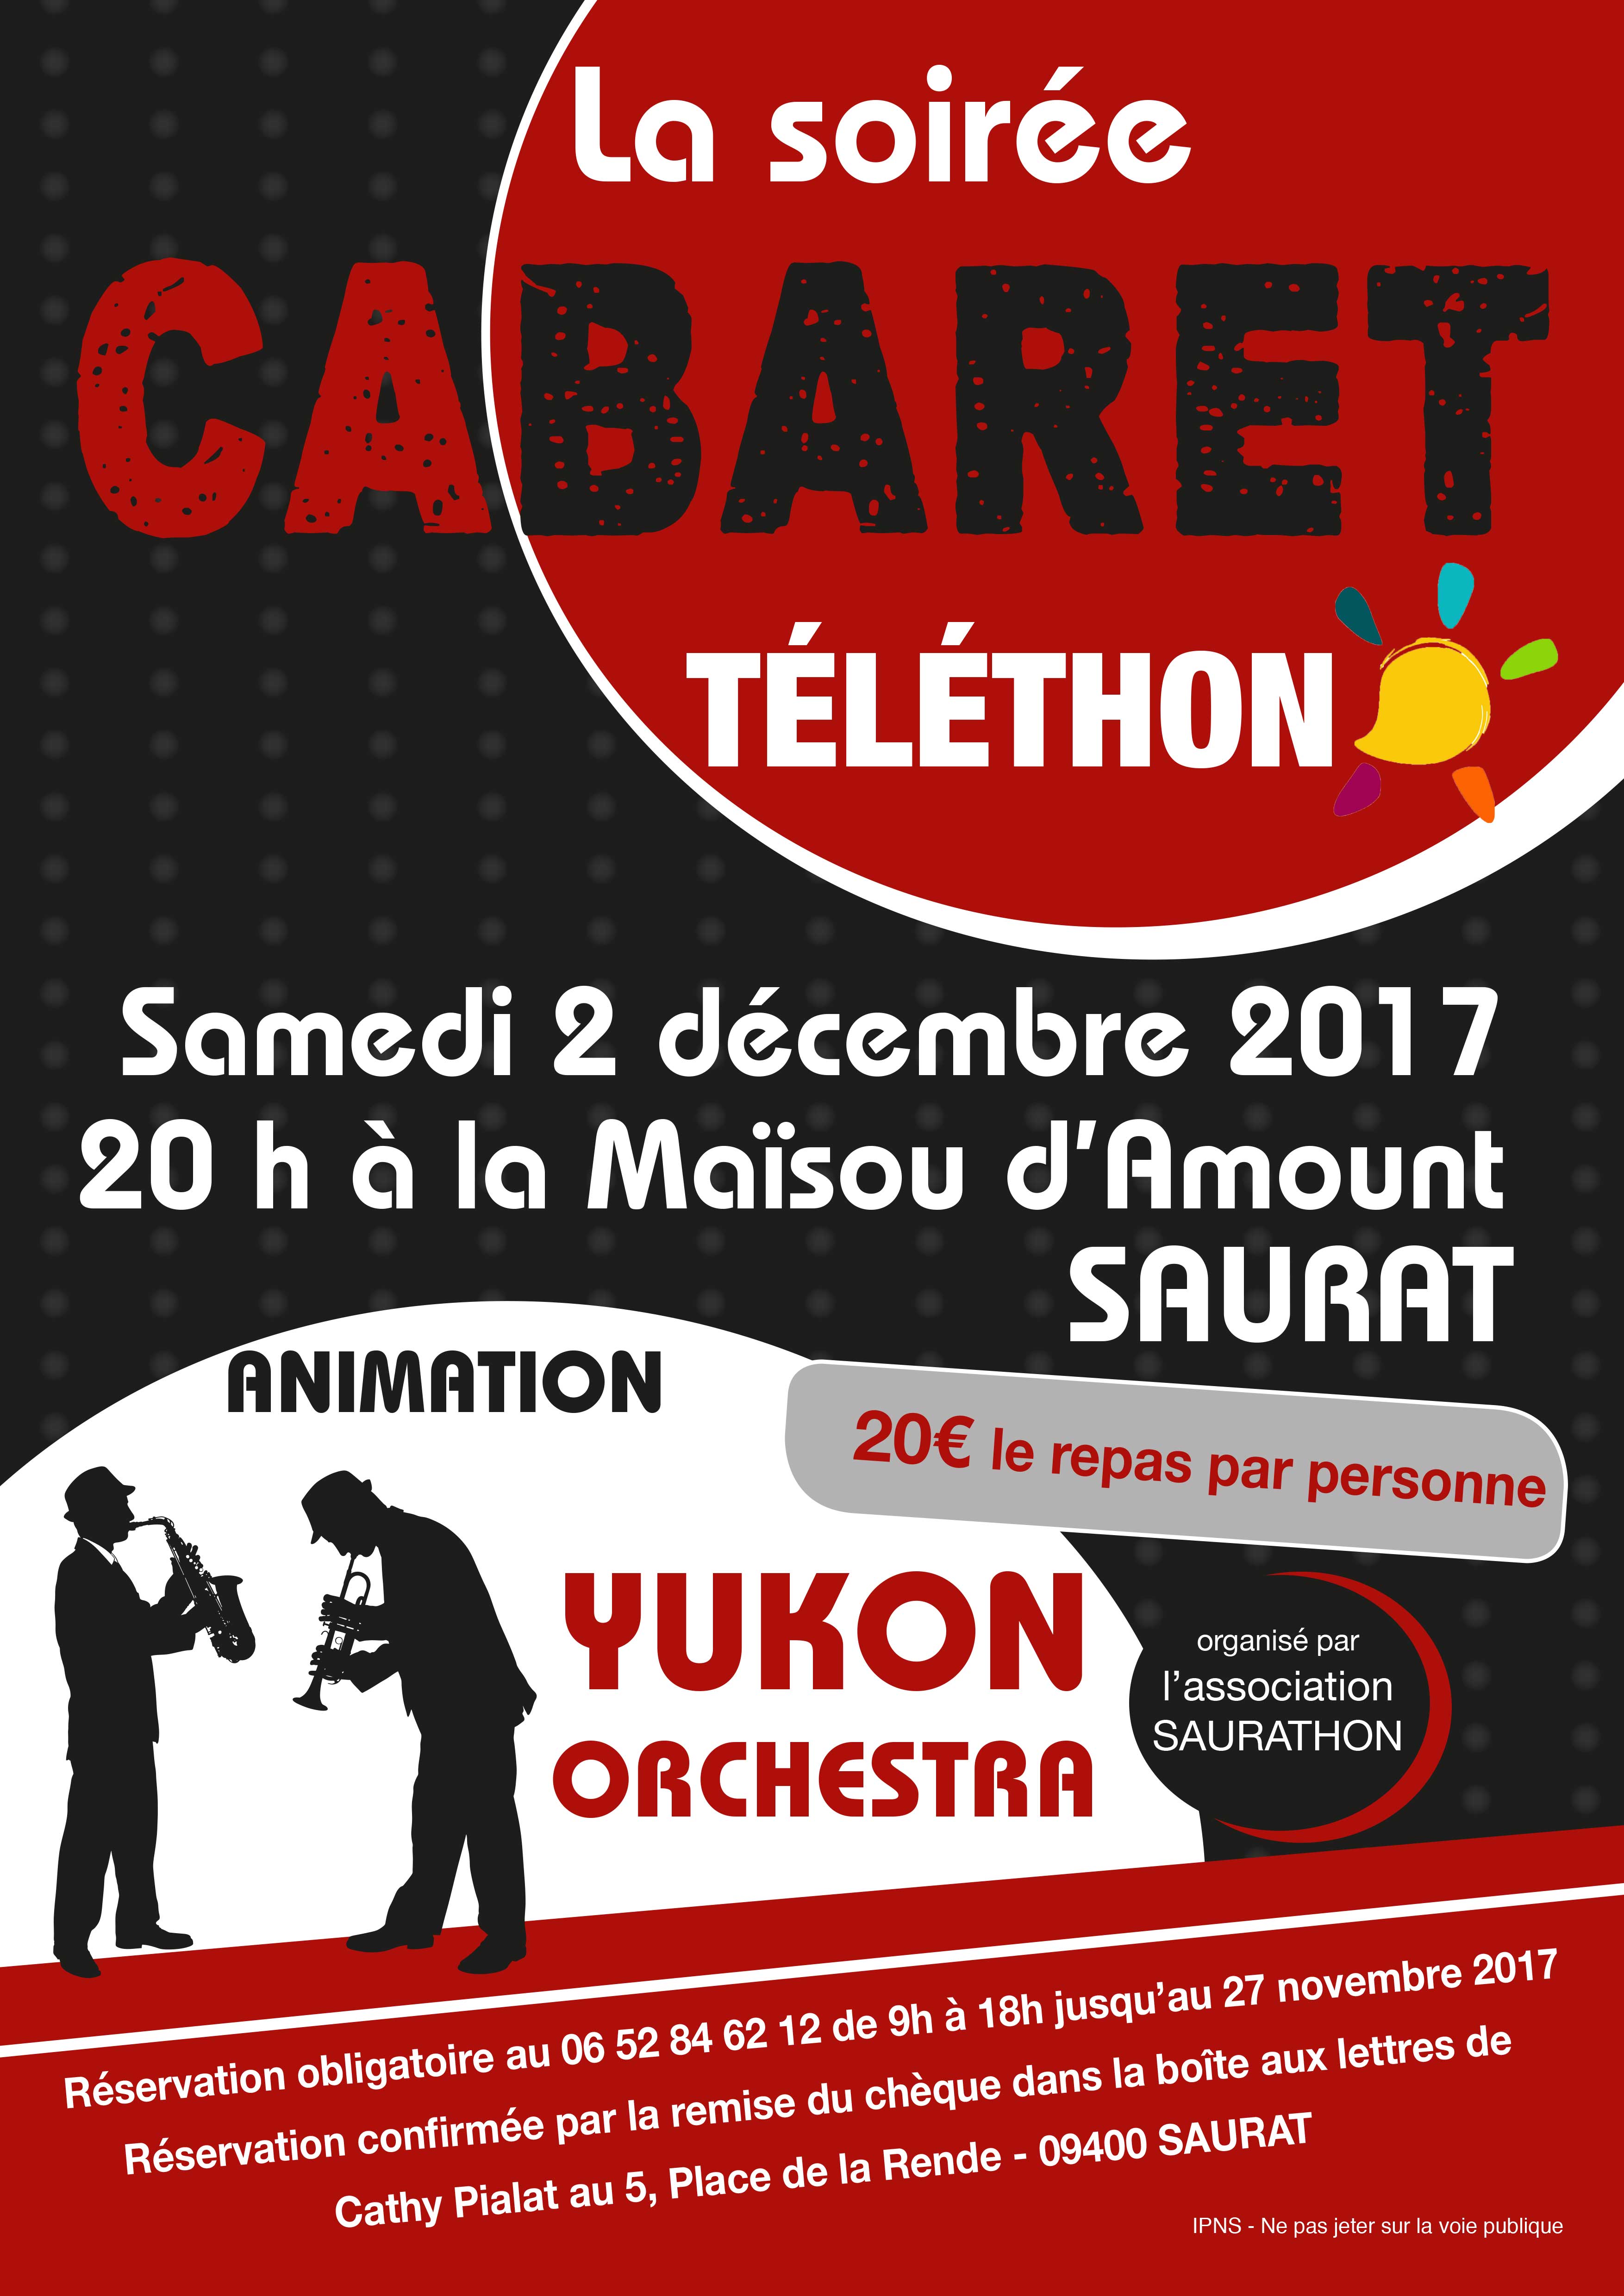 Soirée Cabaret au profit du téléthon - Saurat le 2 décembre 2017